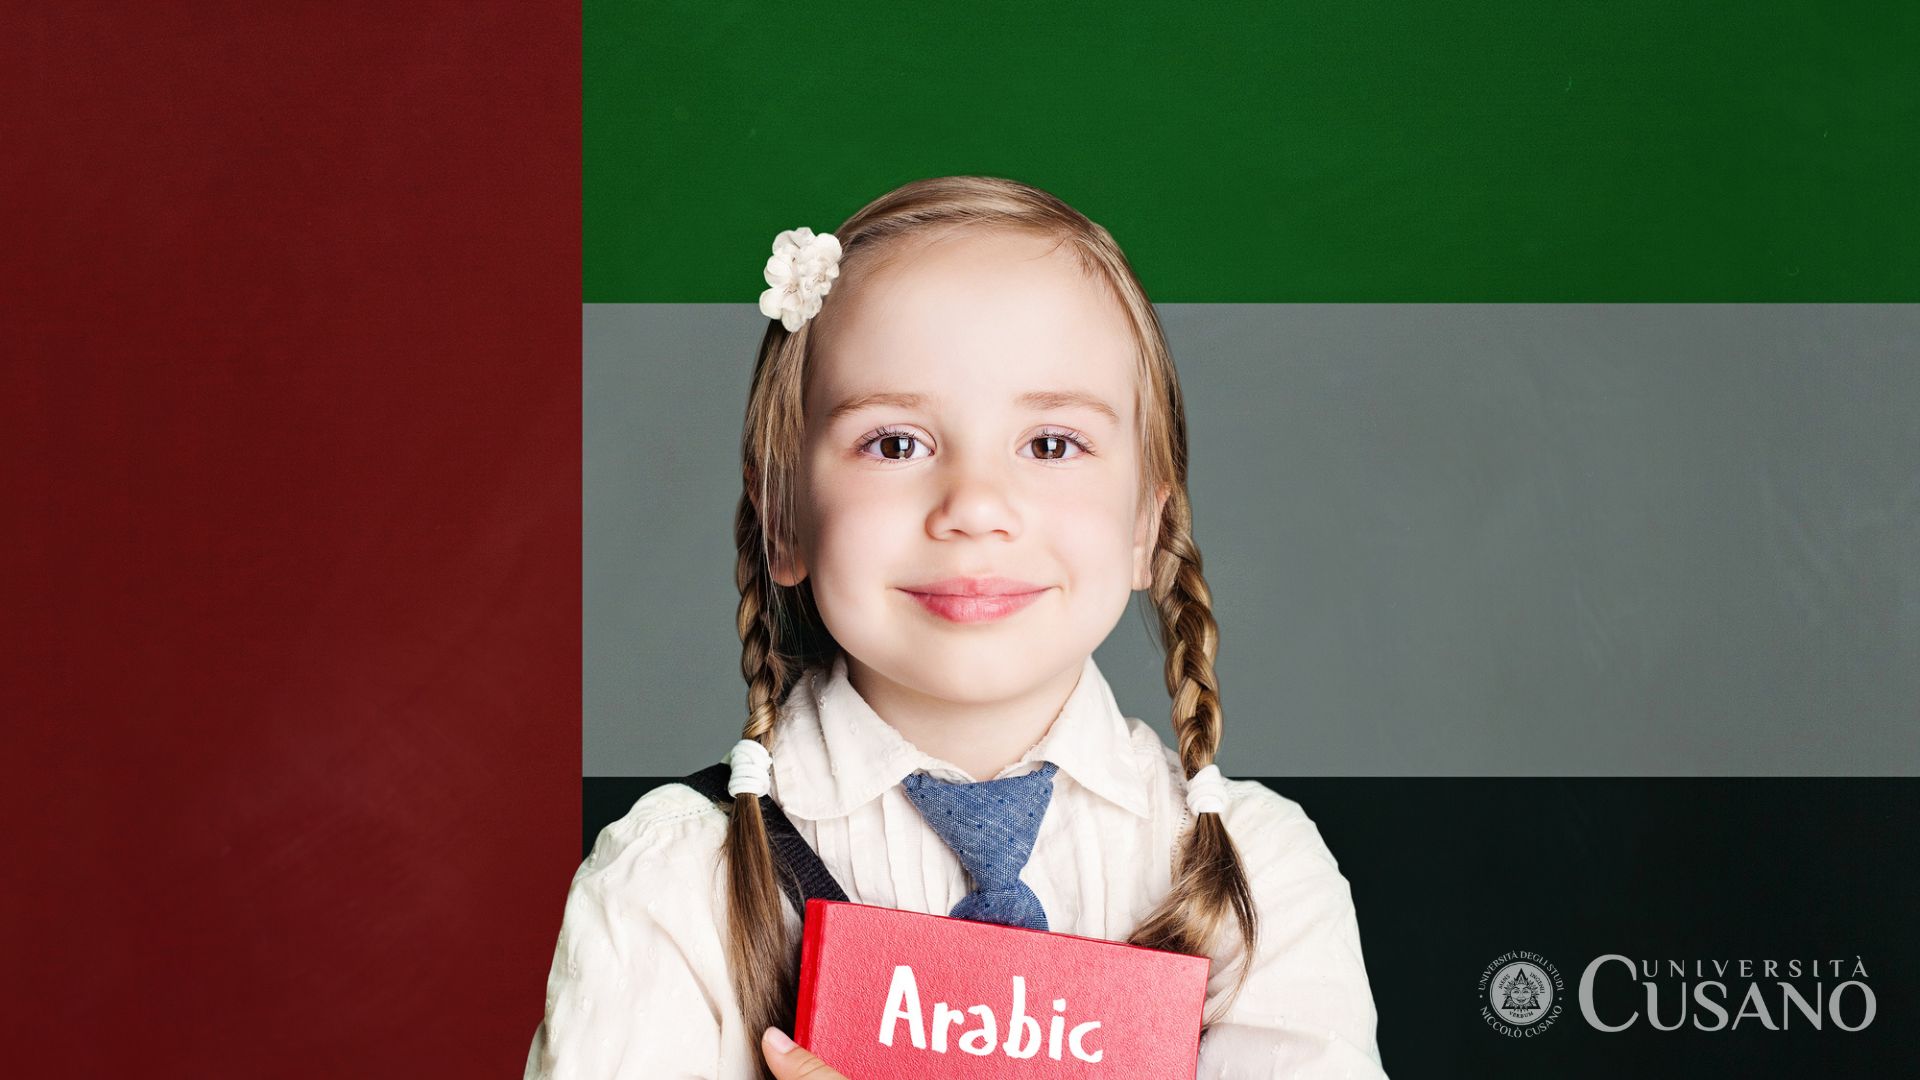 Come imparare l’arabo: consigli utili